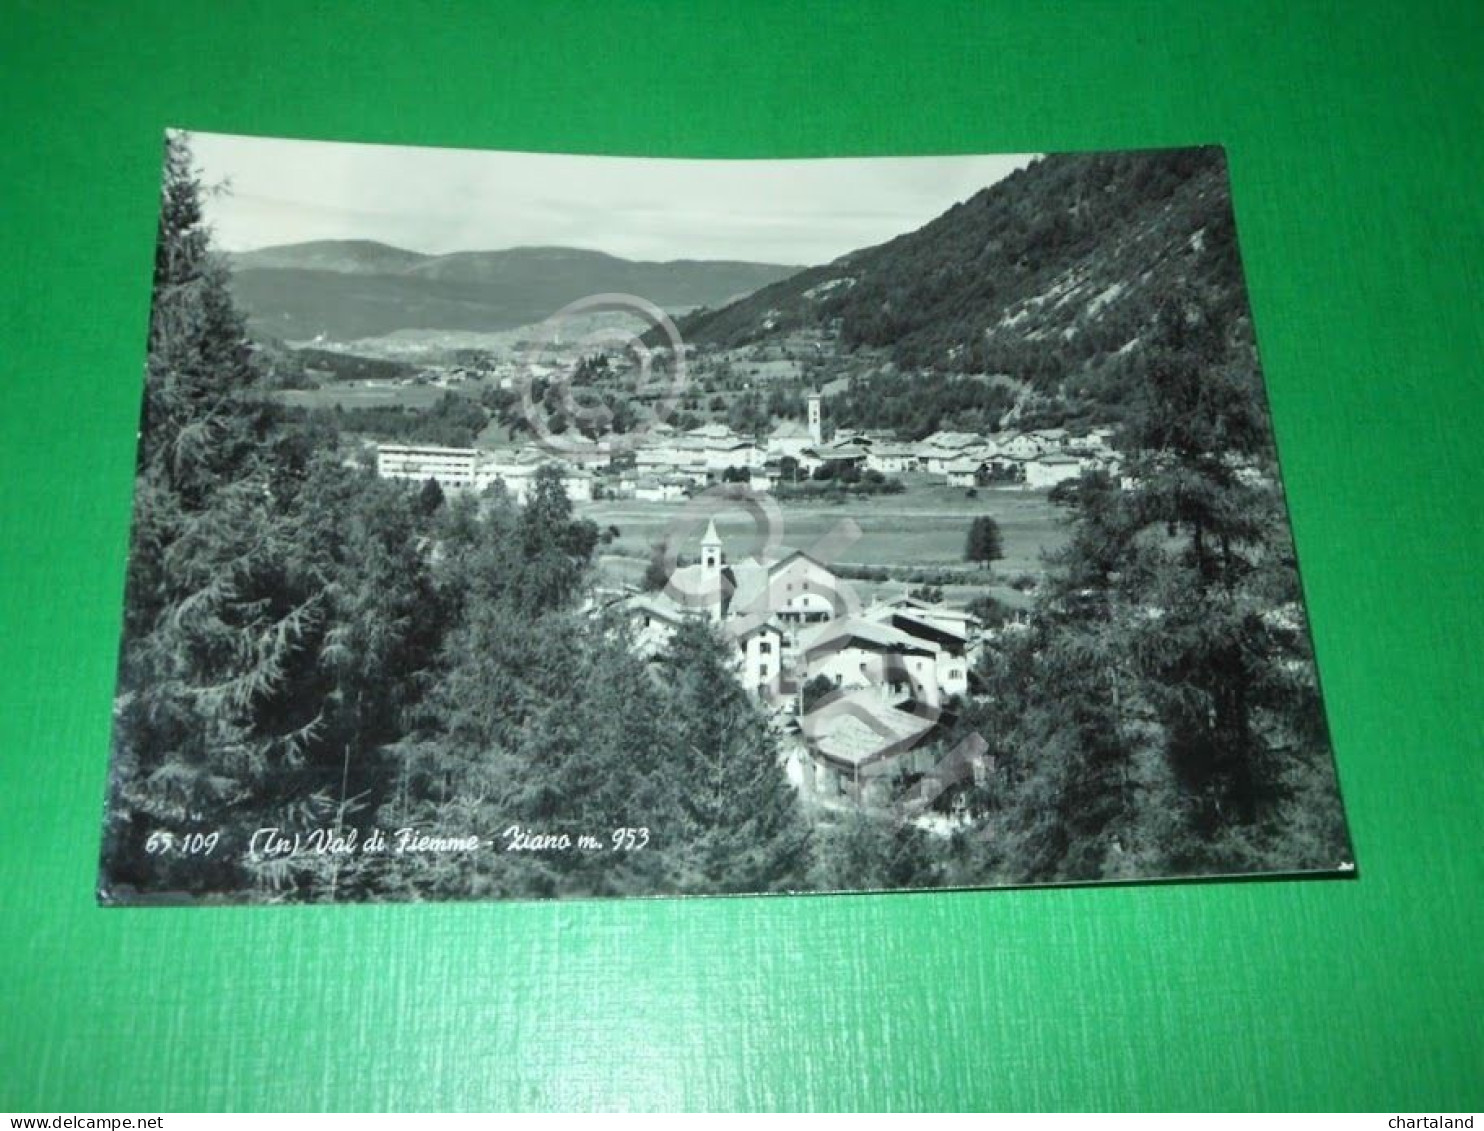 Cartolina Val Di Fiemme ( Trento ) - Ziano - Panorama 1968 - Trento